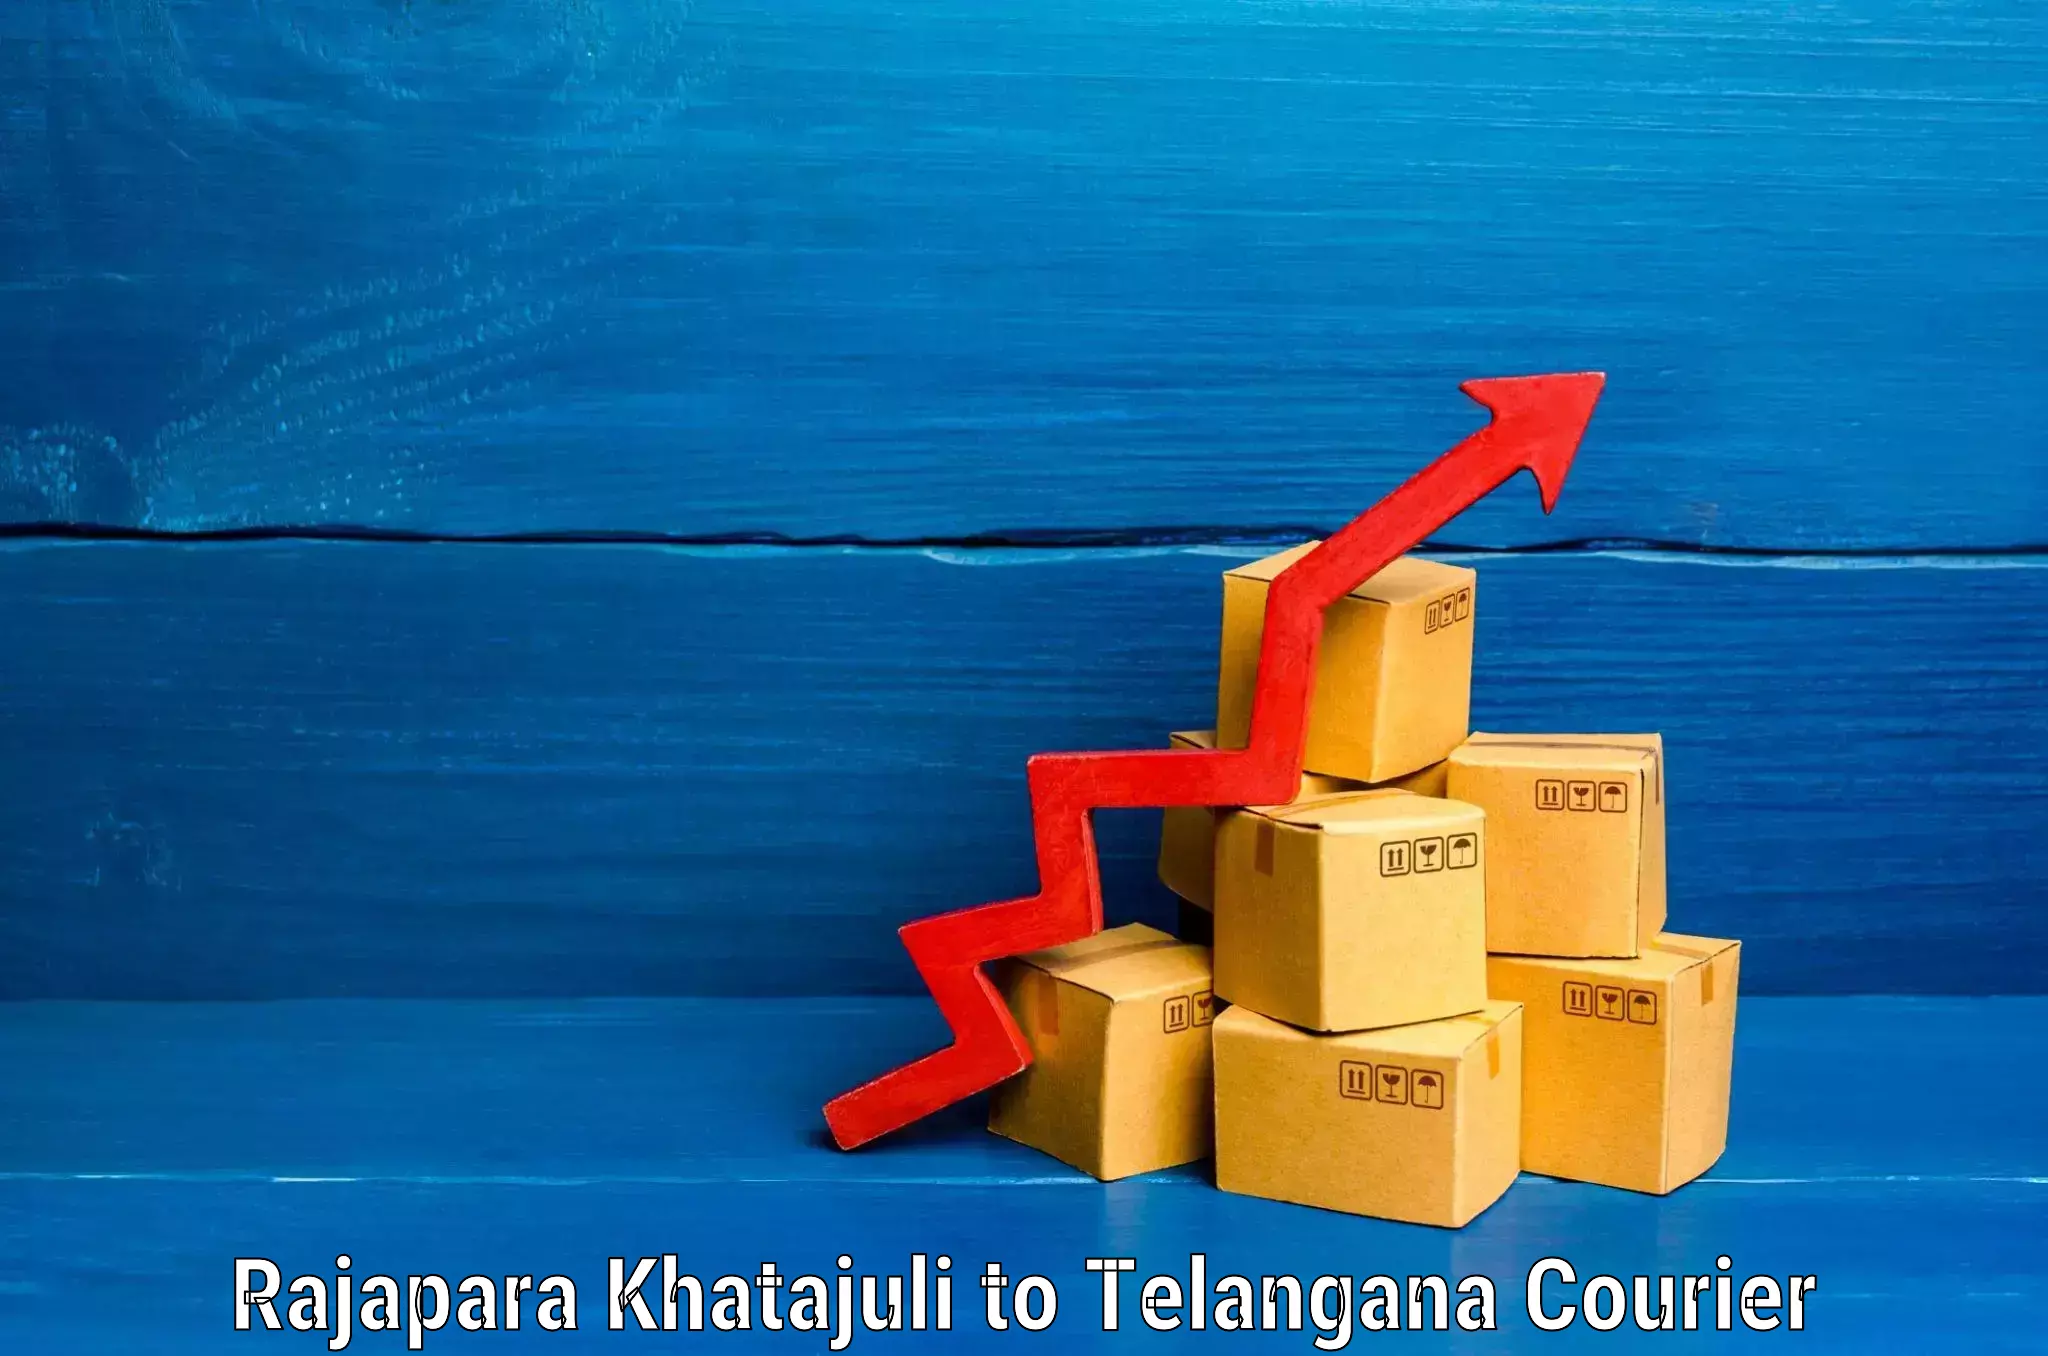 Luggage delivery system Rajapara Khatajuli to Telangana